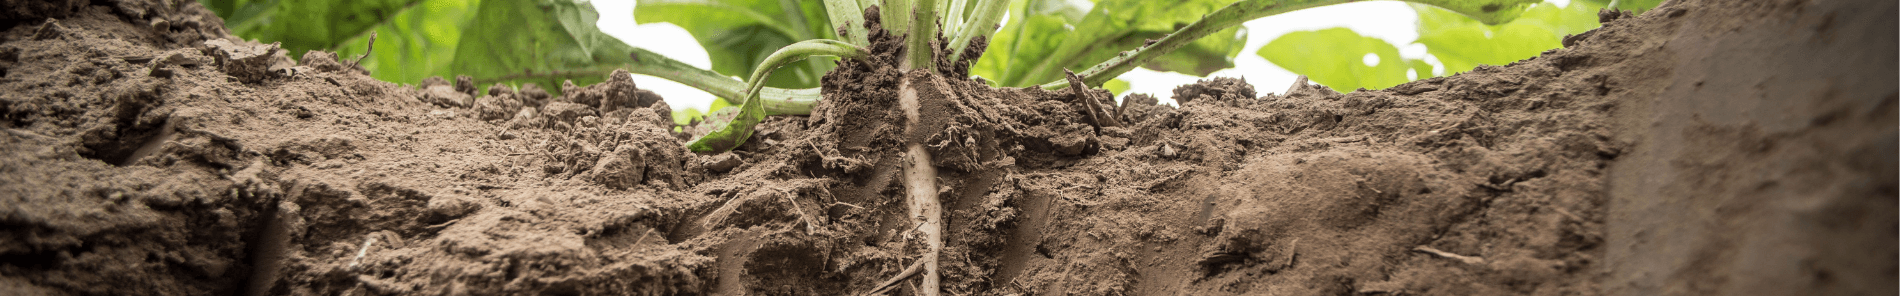 Breng leven in de bodem met BioAktiv-P